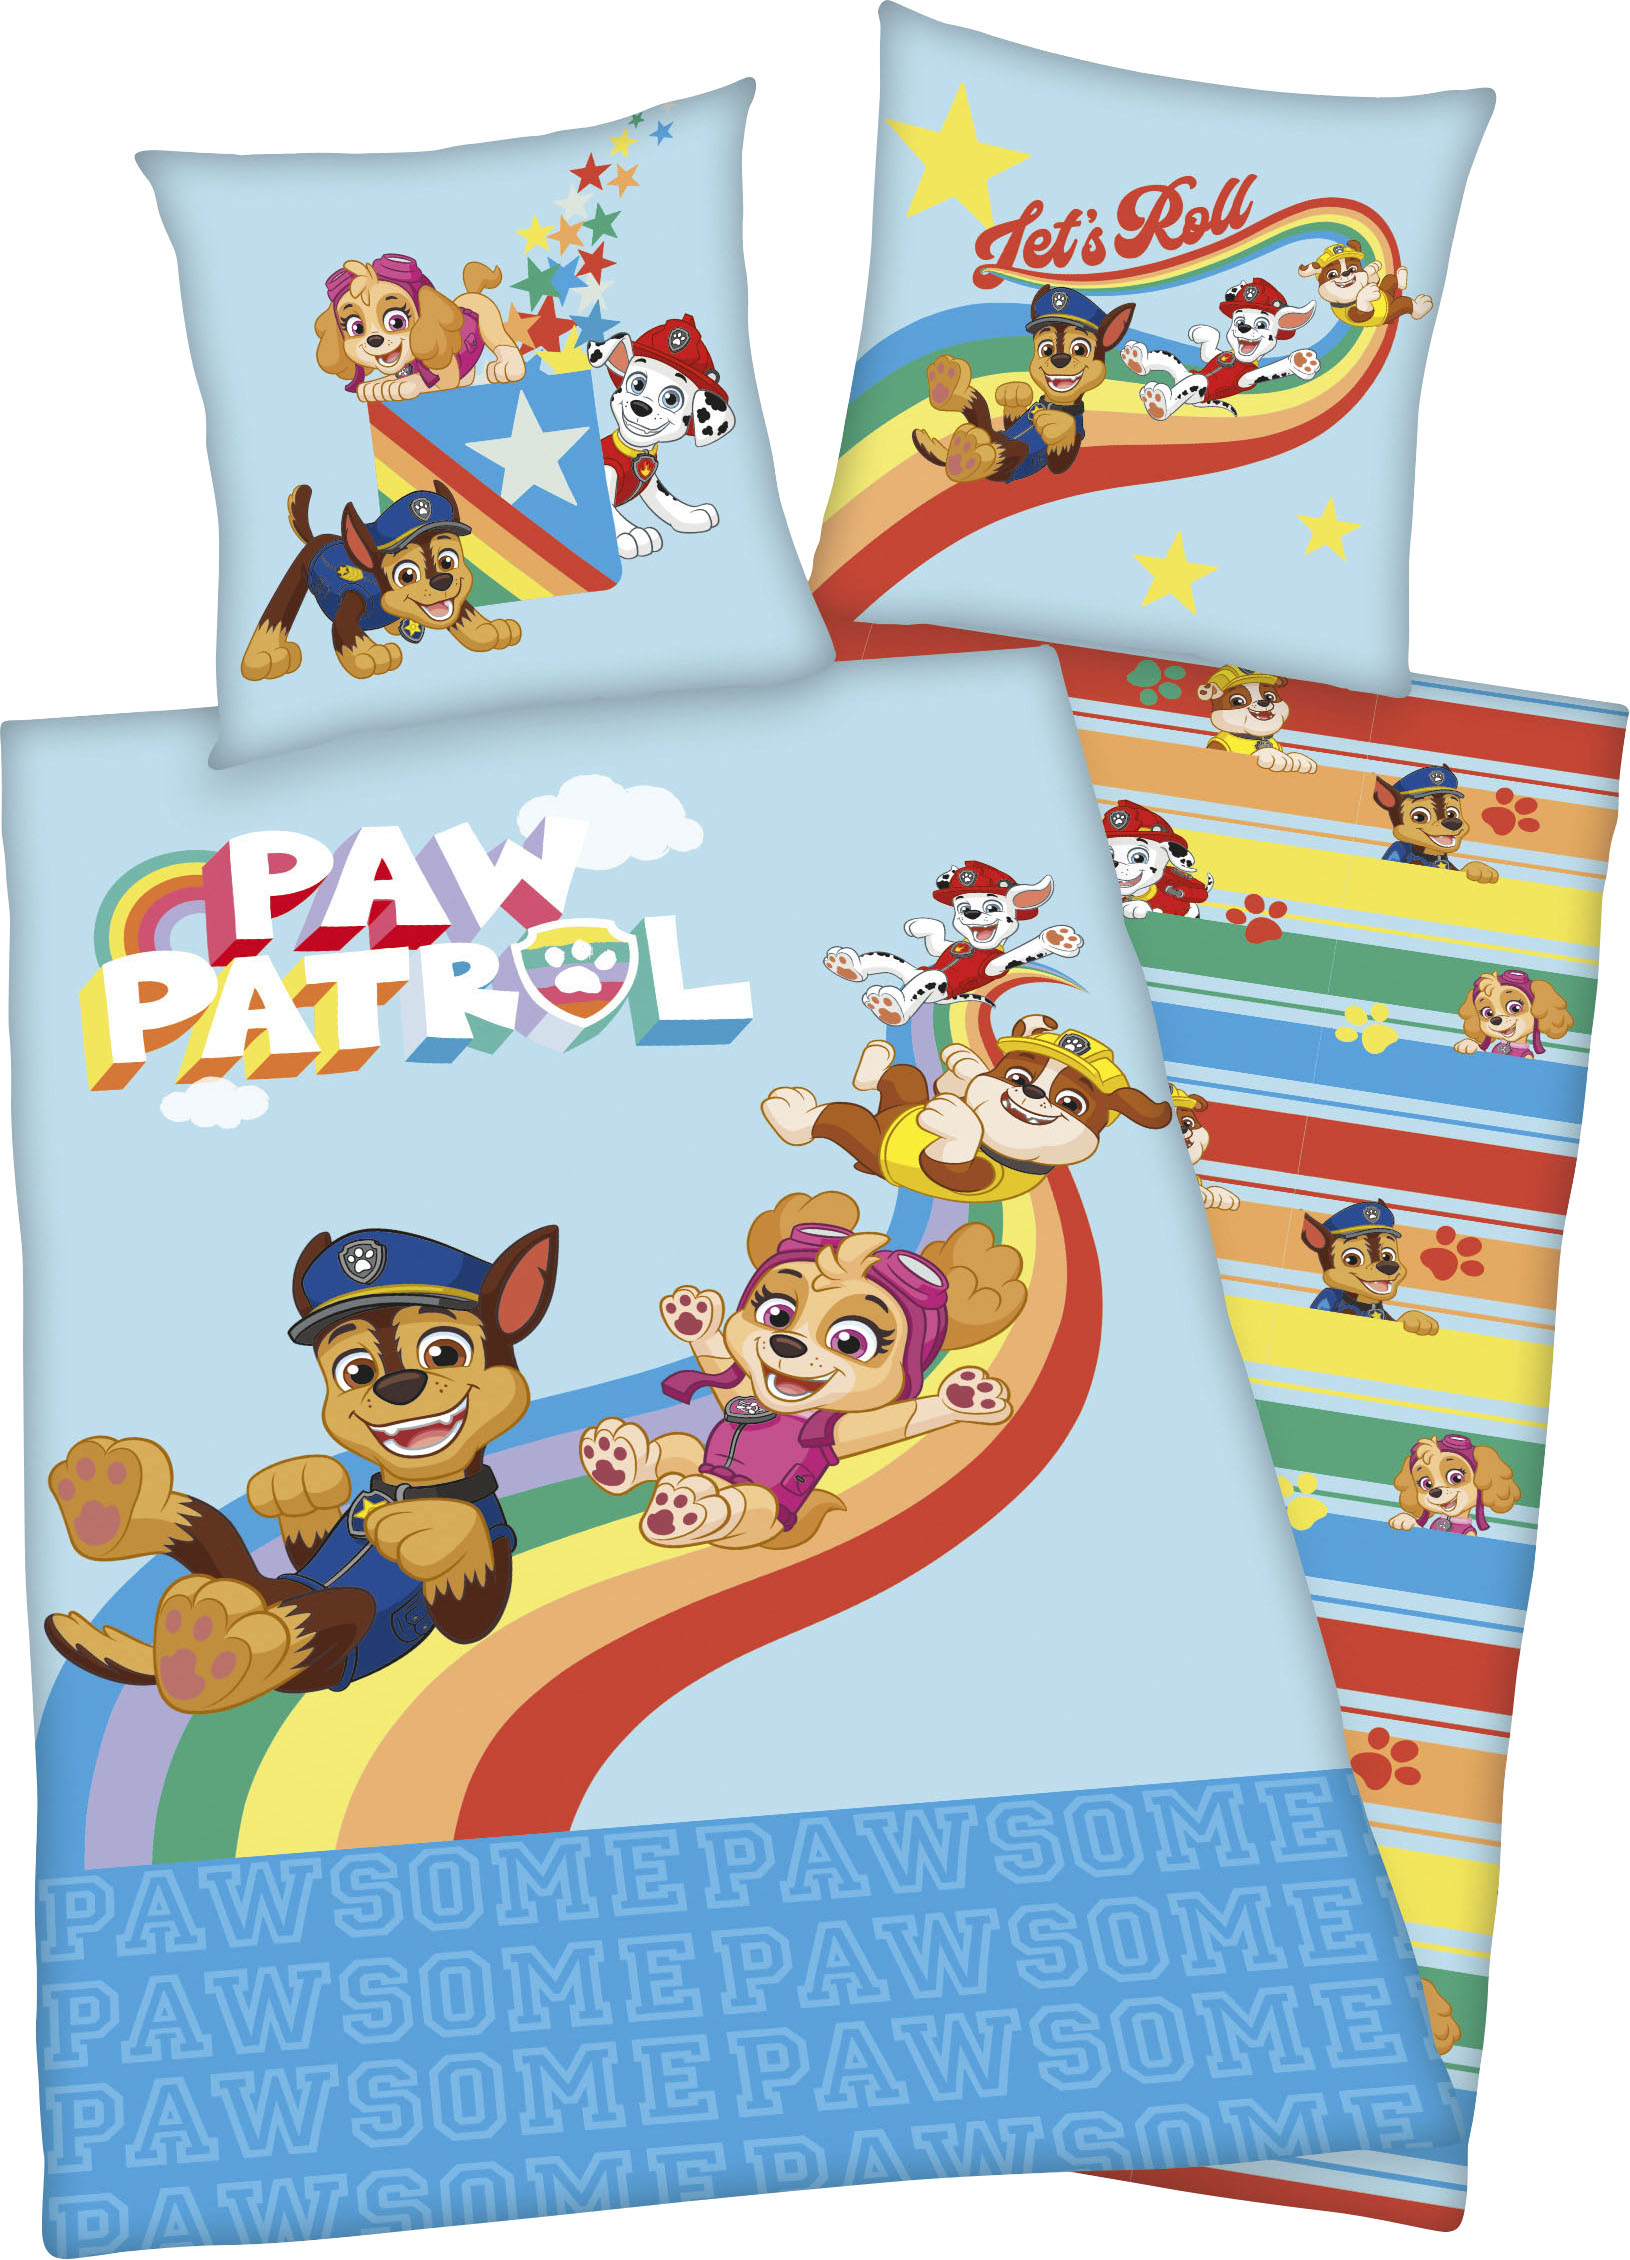 PAW PATROL Kinderbettwäsche Lets Roll, mit tollem Paw Patrol Motiv von Paw Patrol